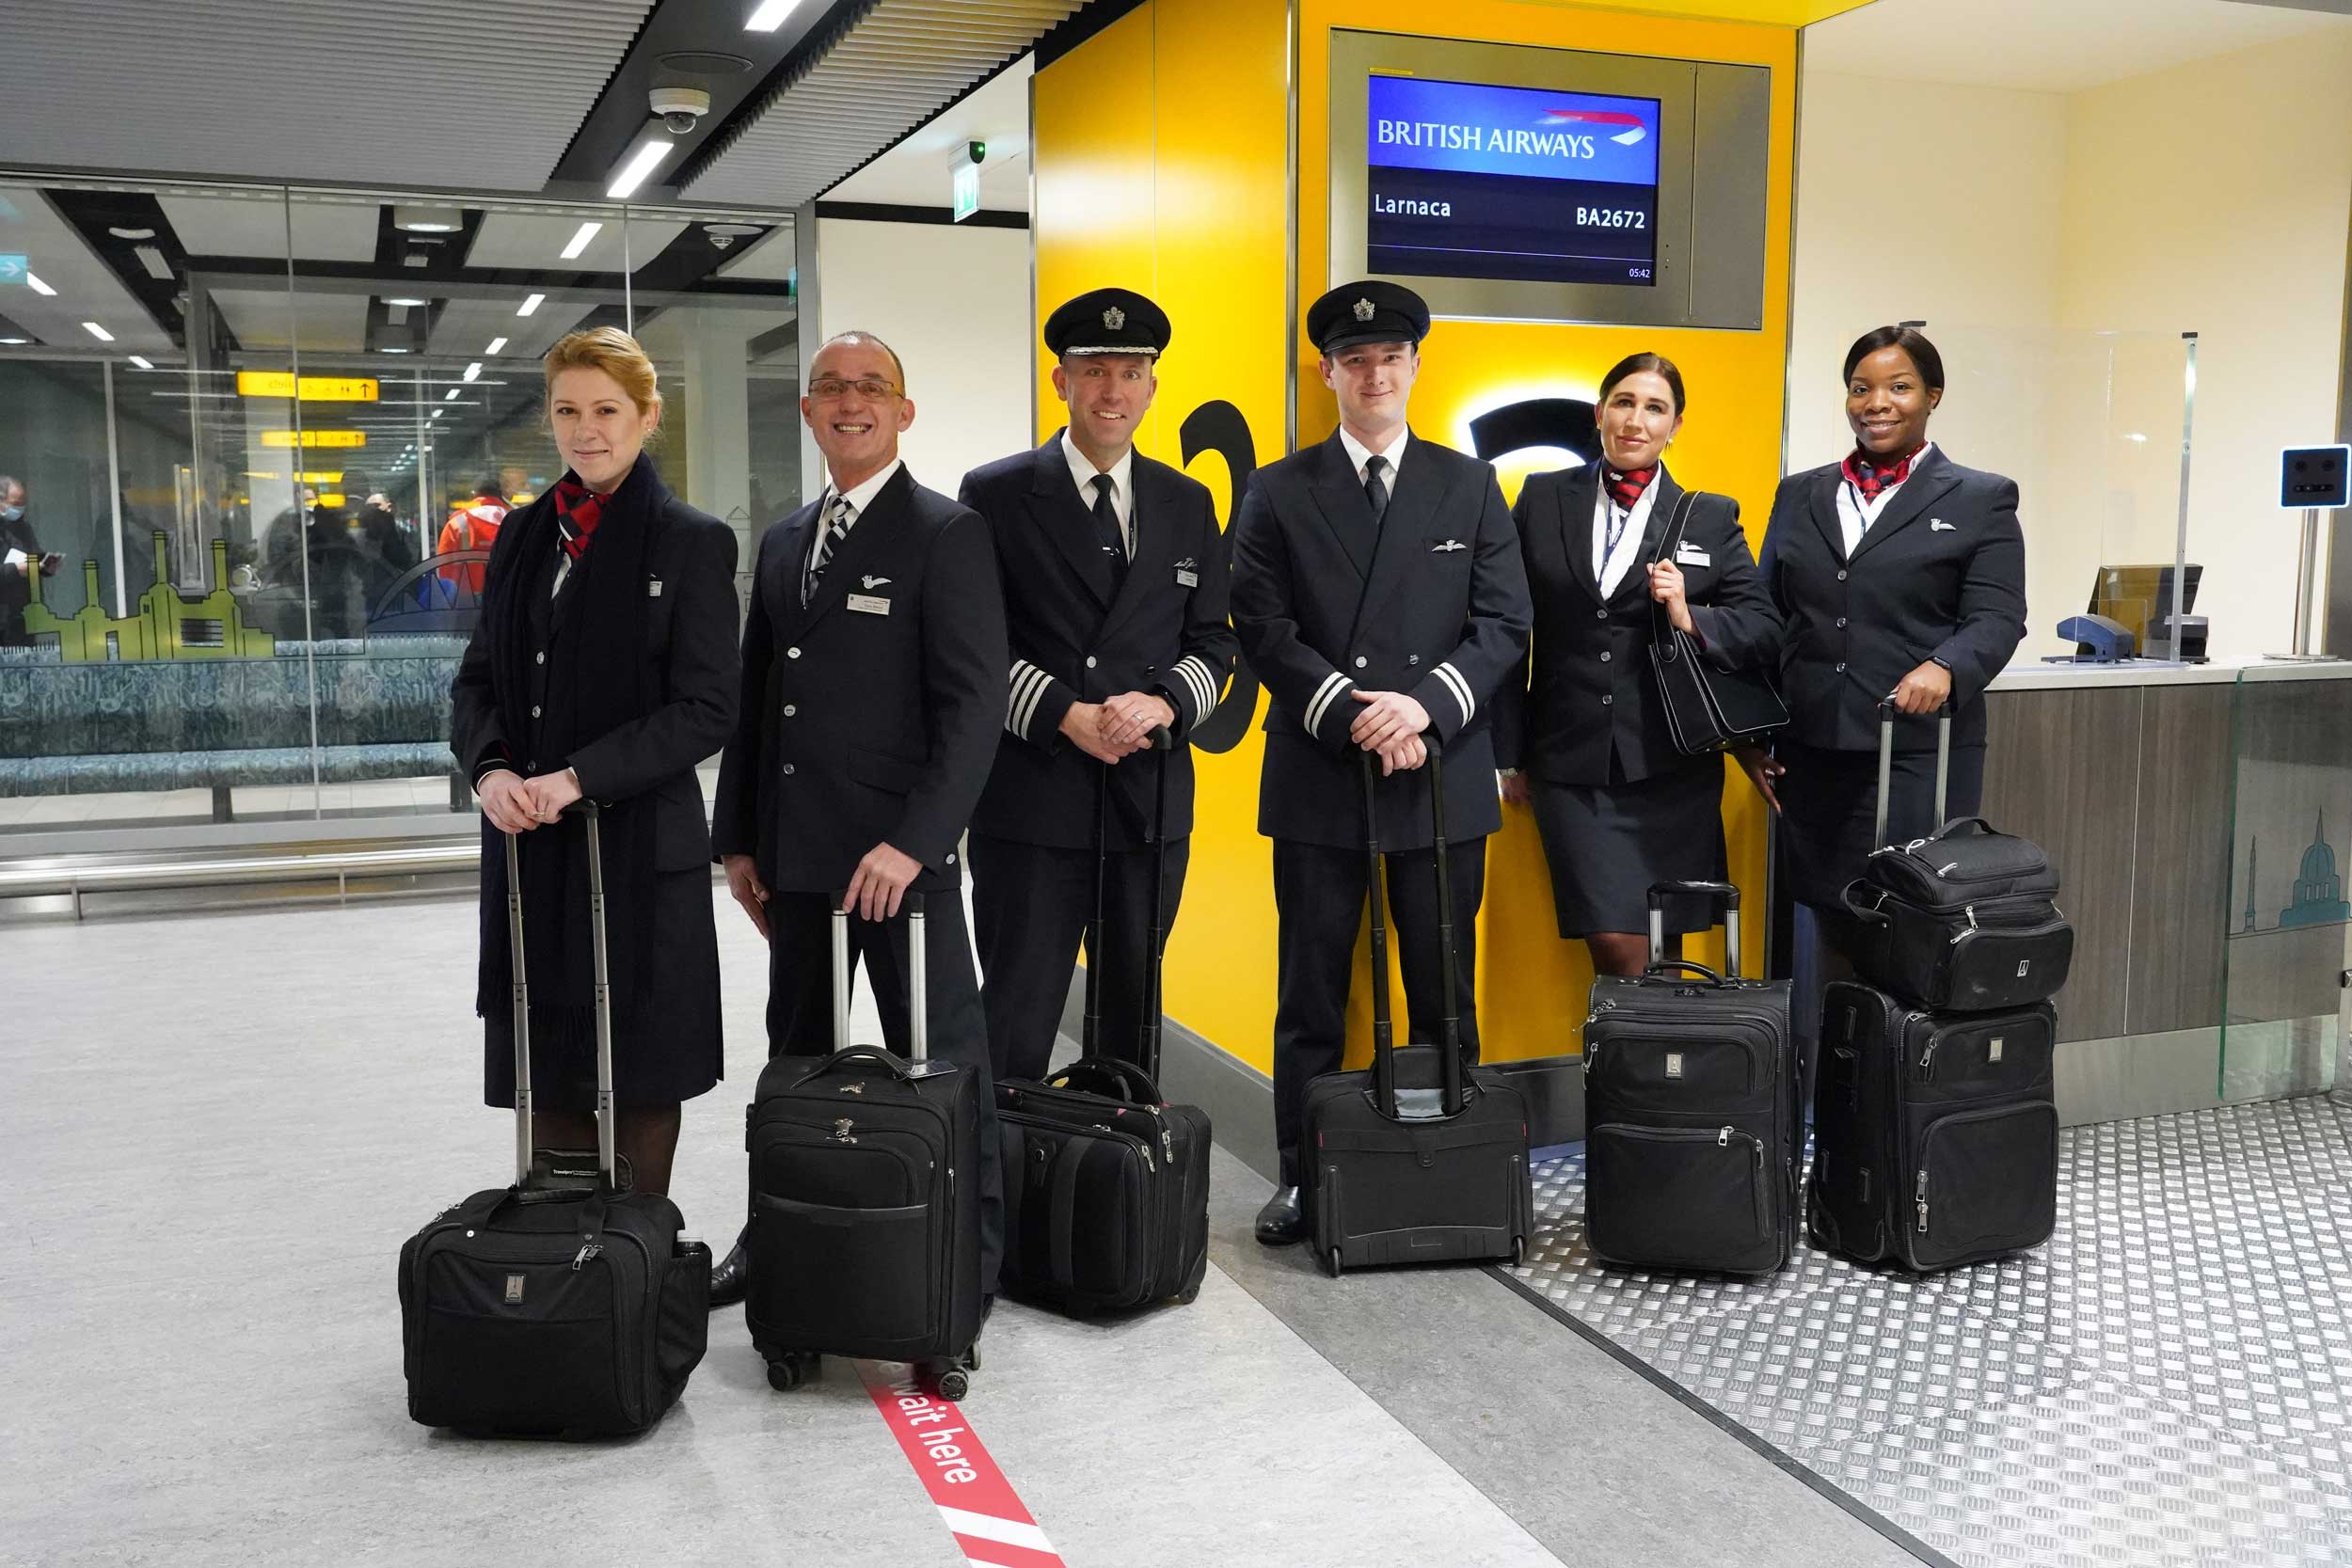 British Airways crew